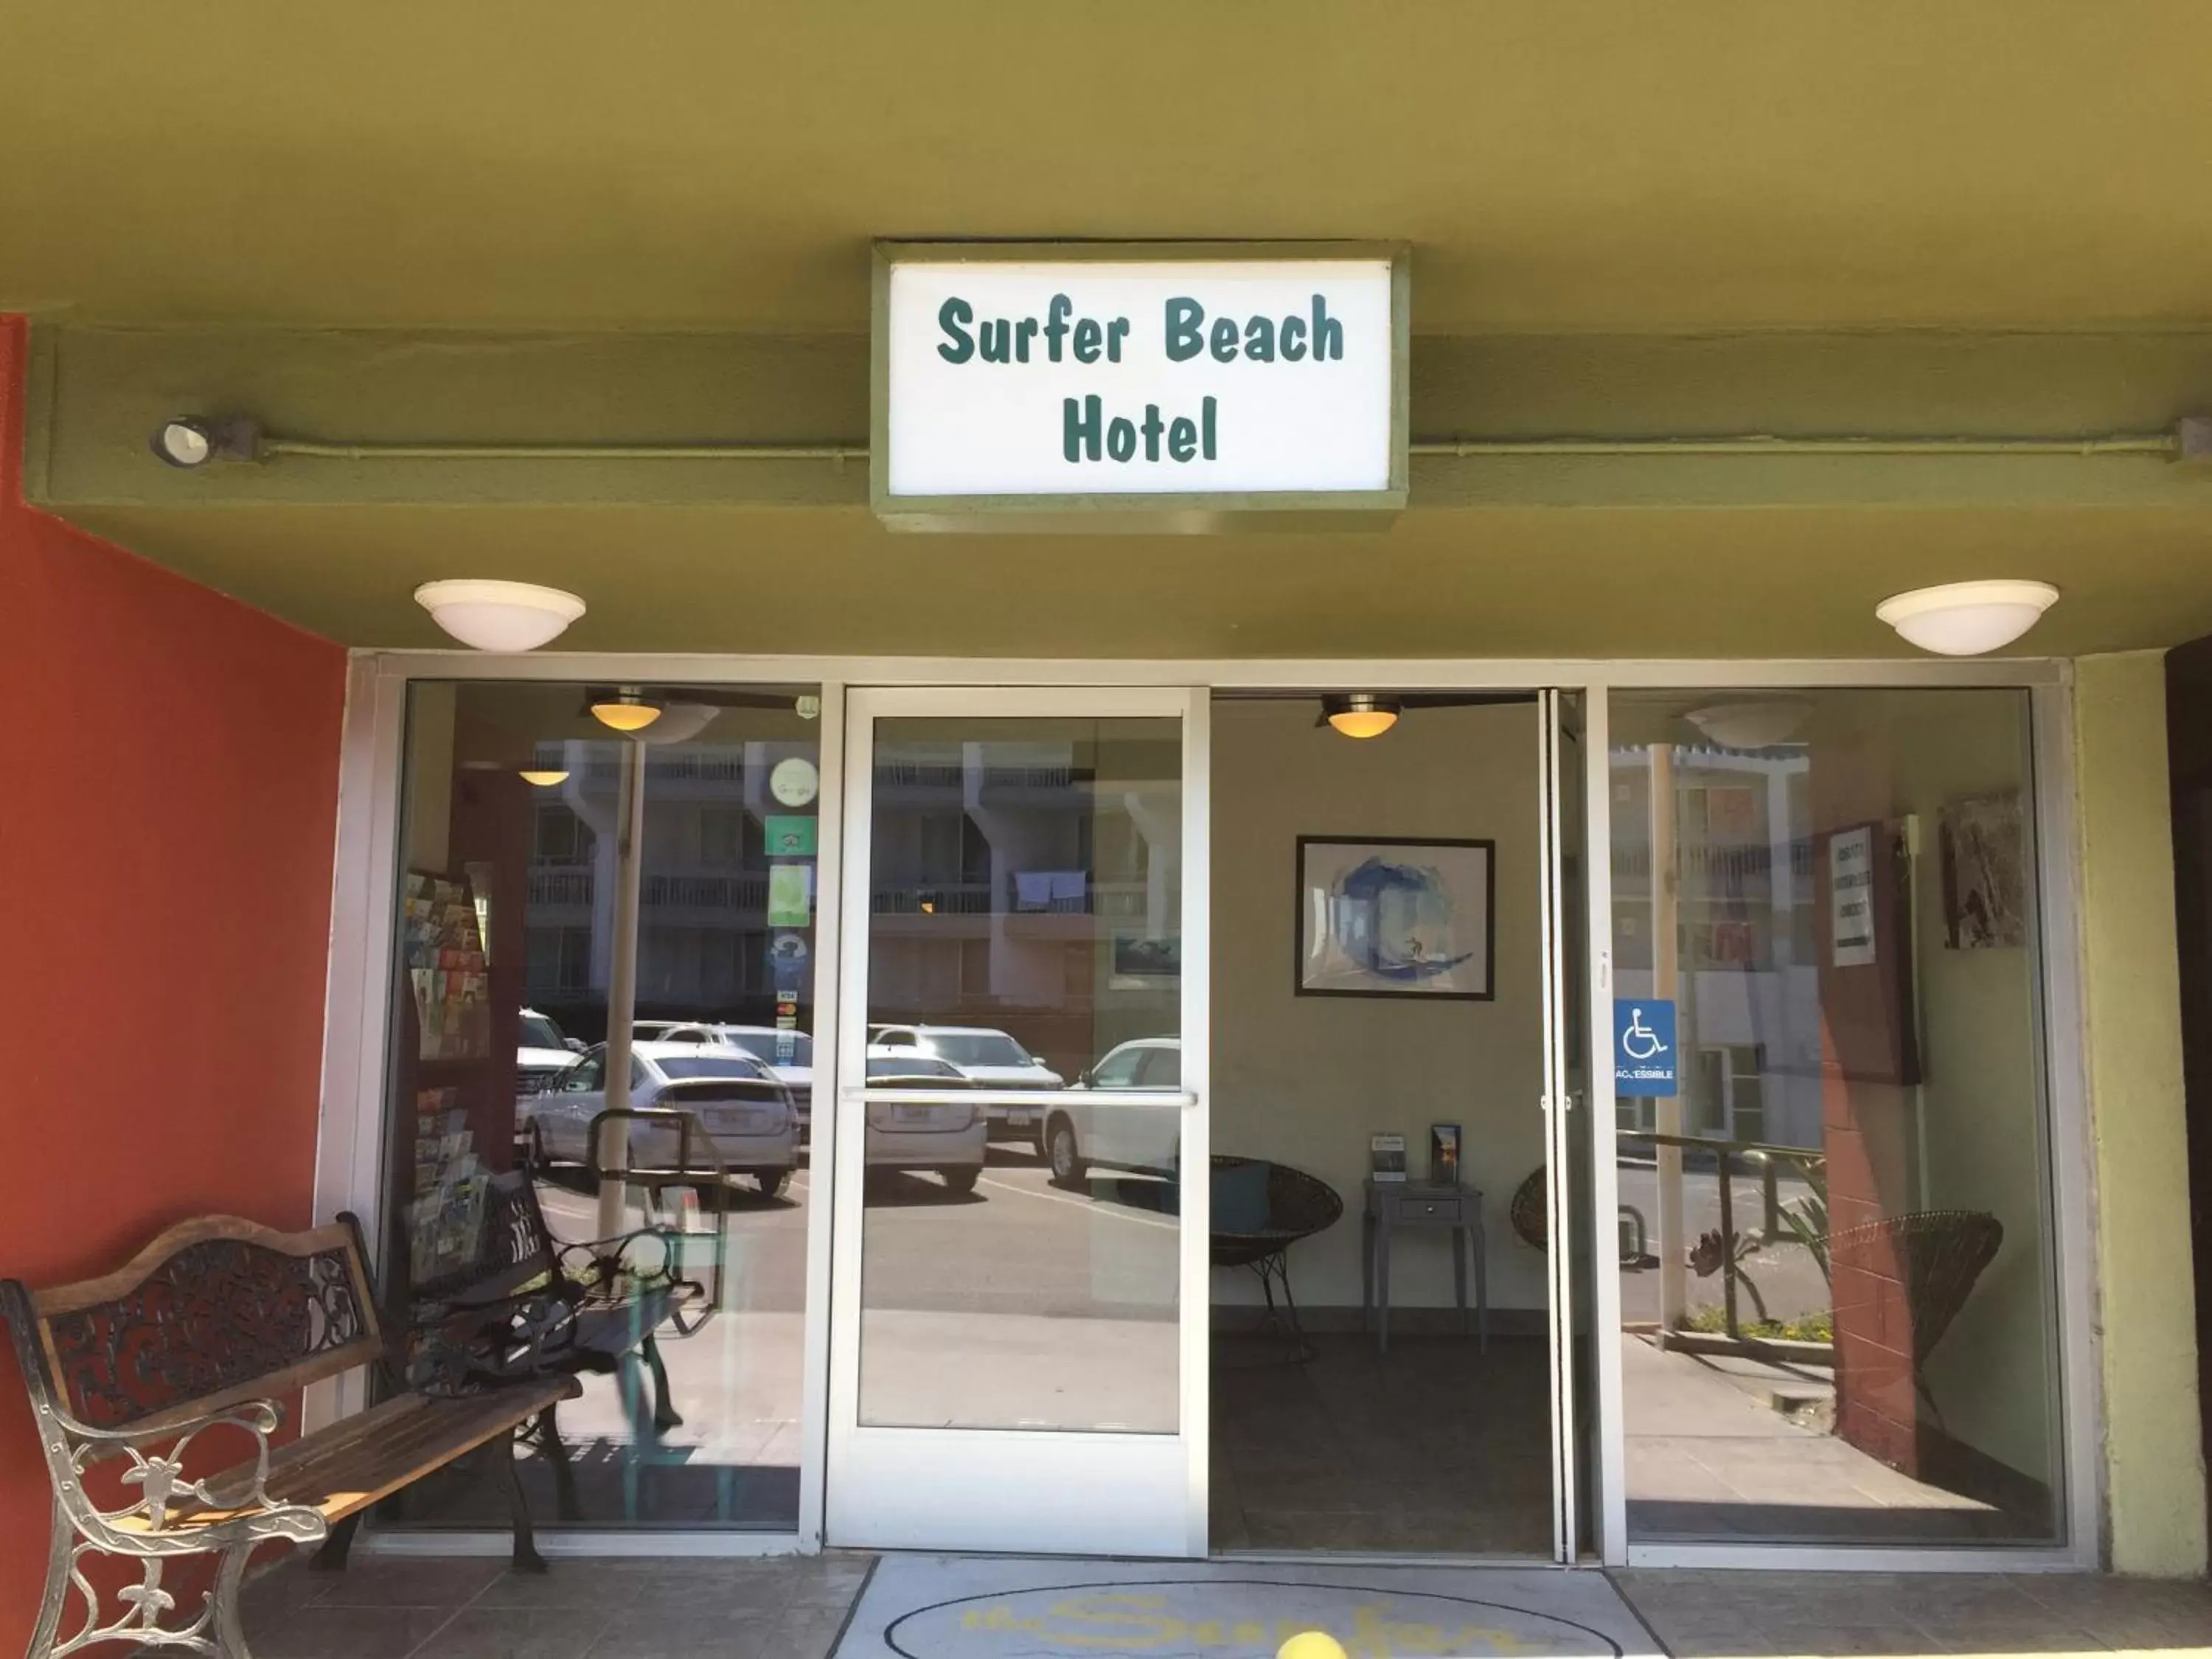 Facade/entrance in Surfer Beach Hotel